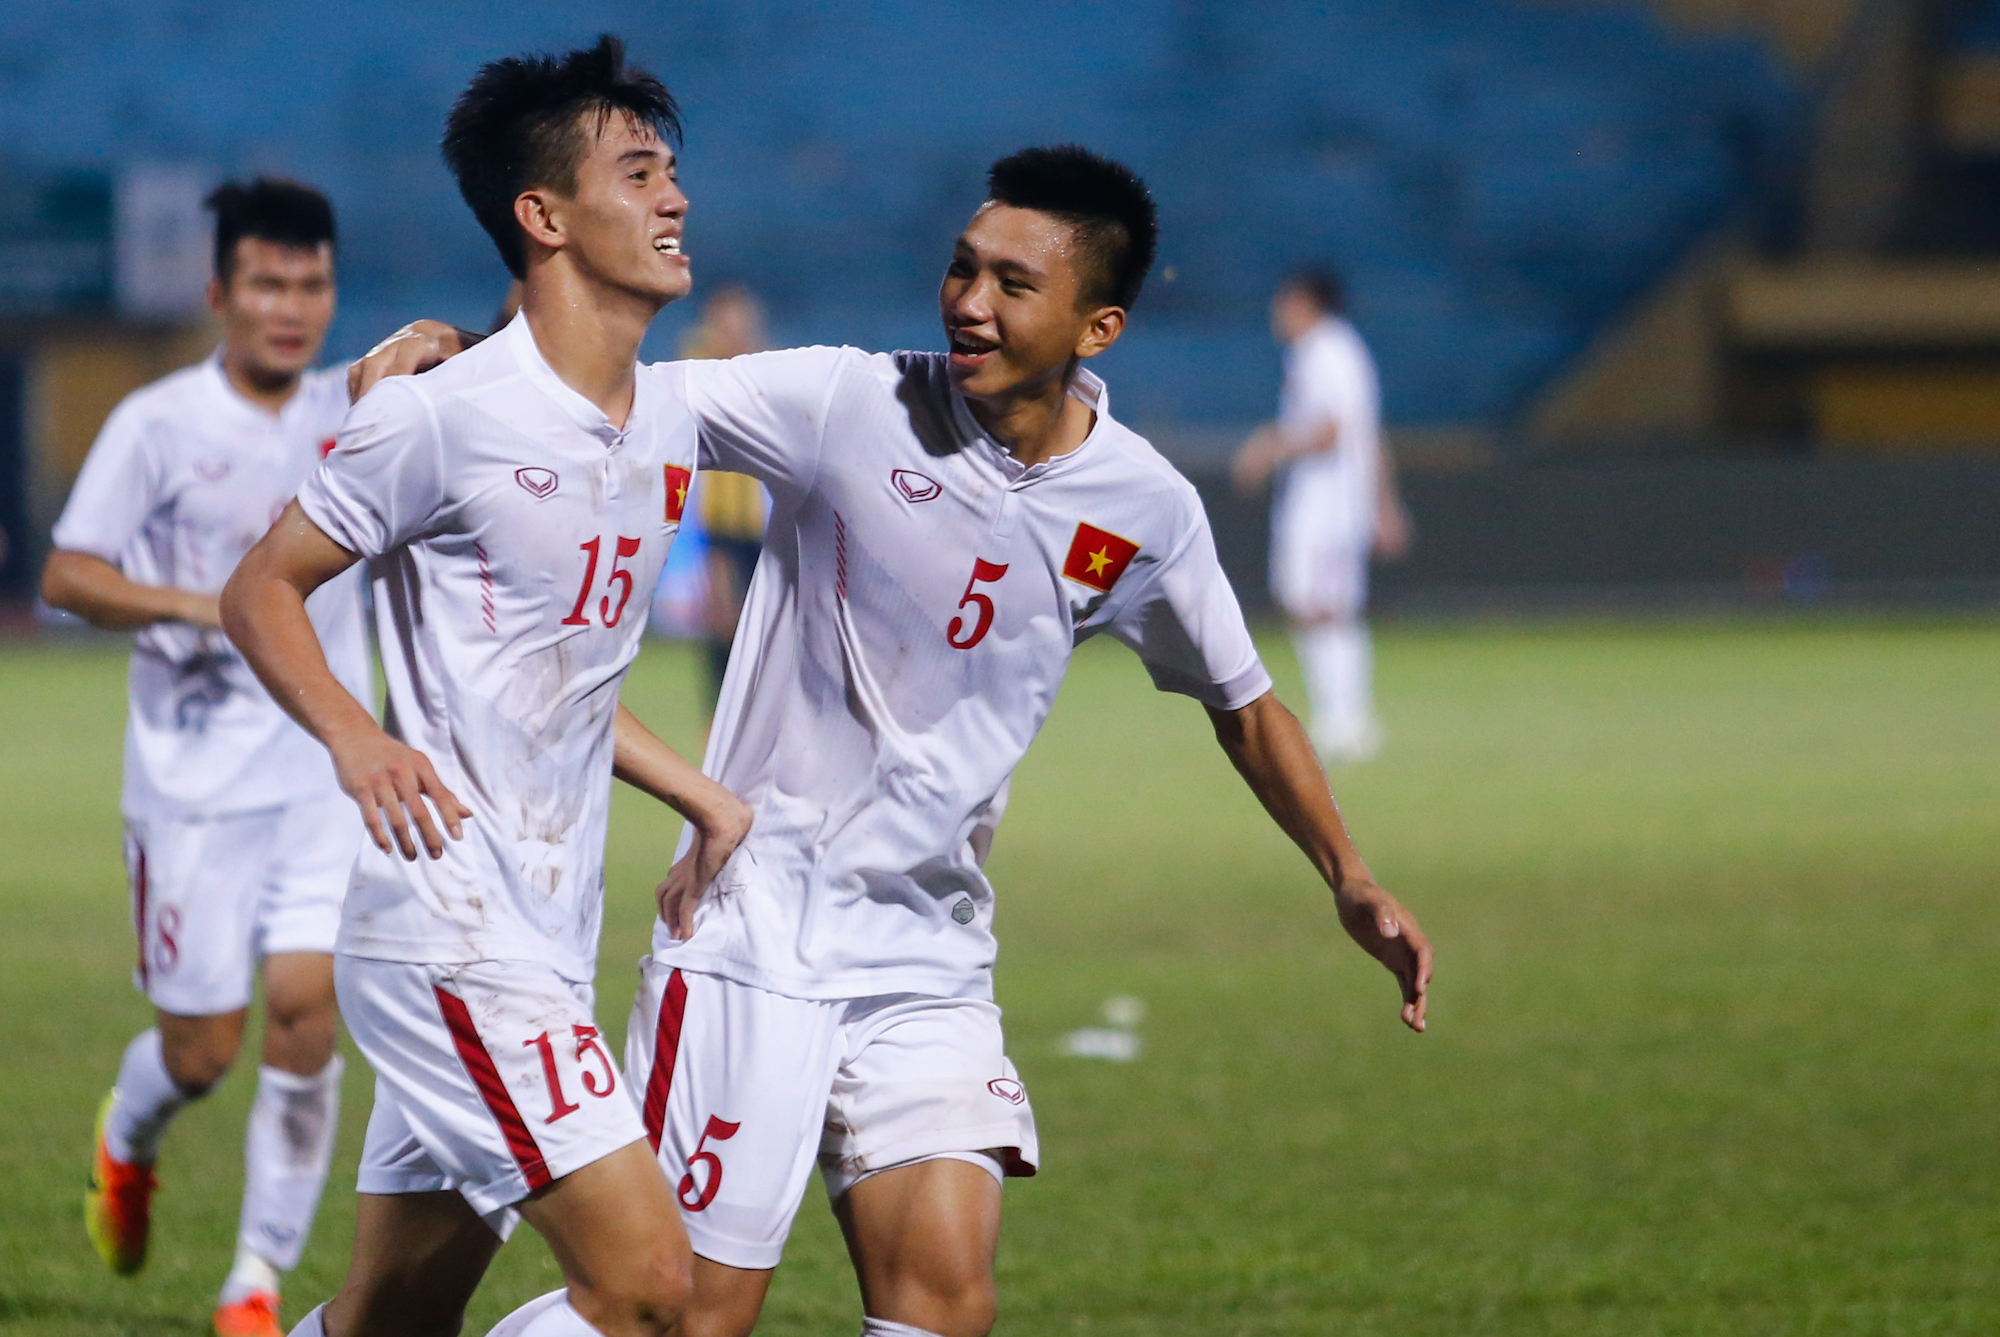 Tại giải châu Á, U19 Việt Nam đã giành hai thắng lợi trước Bắc Triều Tiên và chủ nhà Bahrain. (Ảnh: Minh Chiến/Vietnam+)